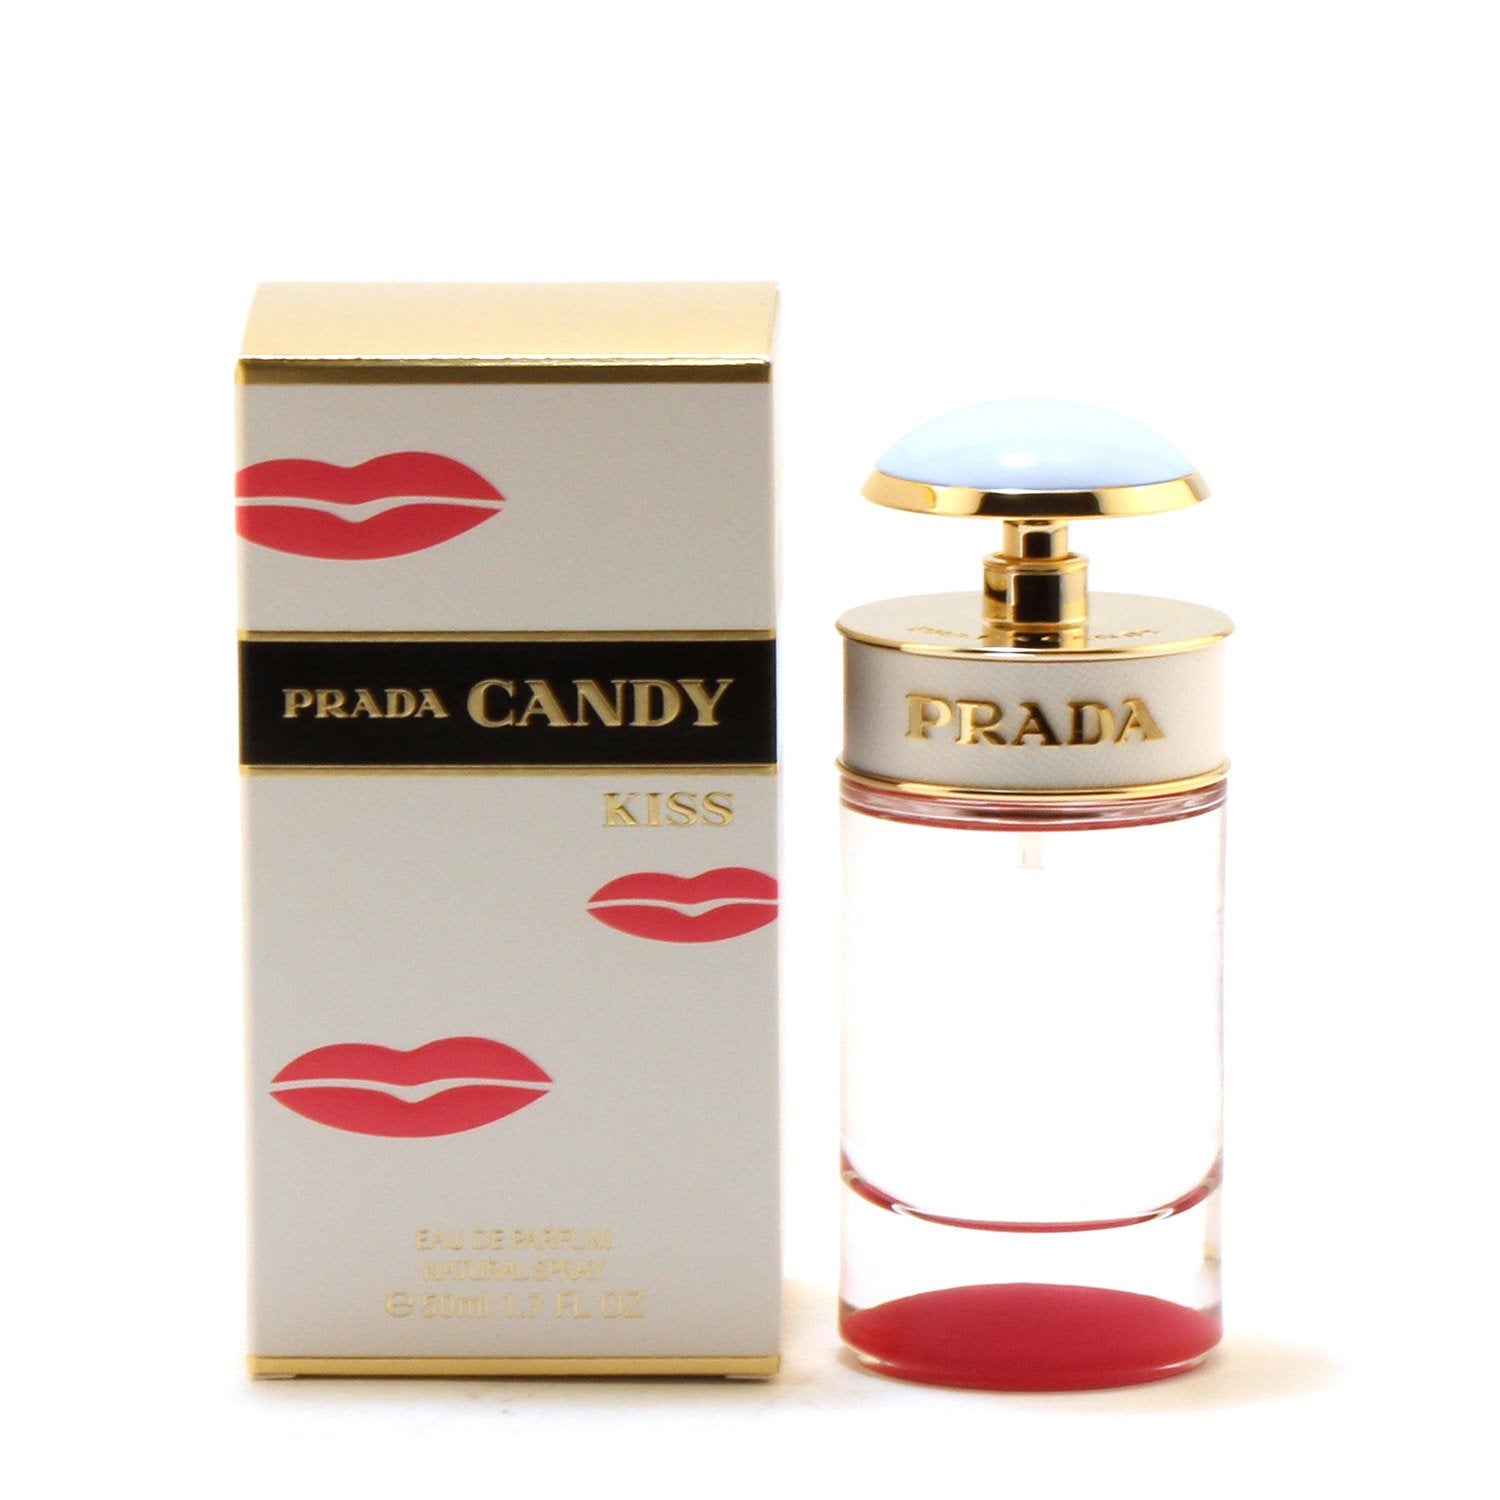 Perfume - PRADA CANDY KISS FOR WOMEN - EAU DE PARFUM SPRAY